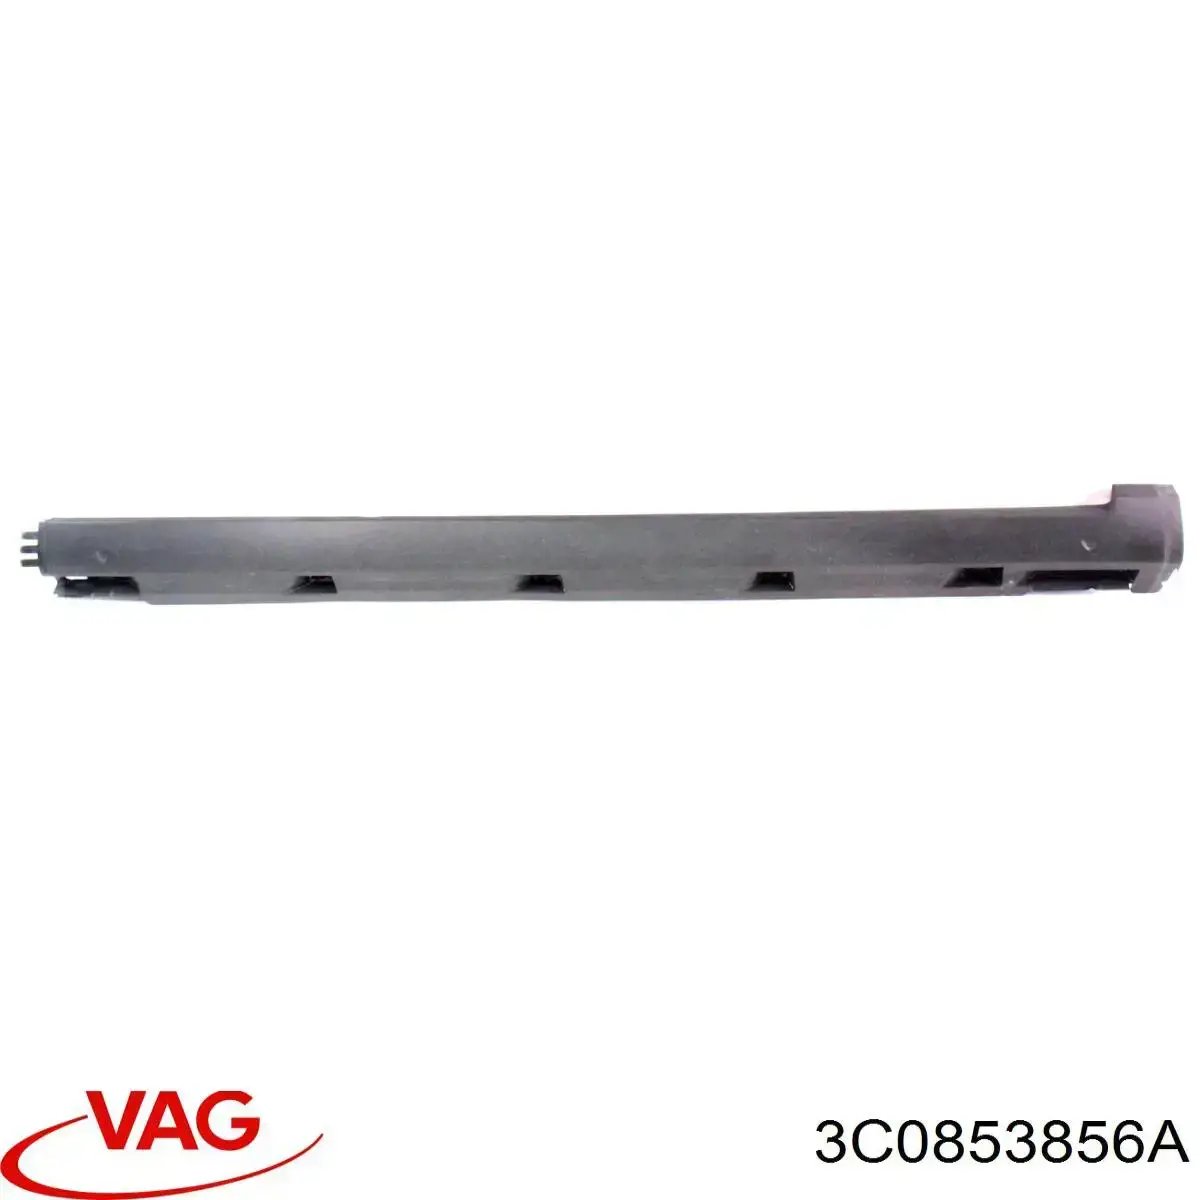 3C08538569B9 VAG placa sobreposta (moldura externa direita de acesso)